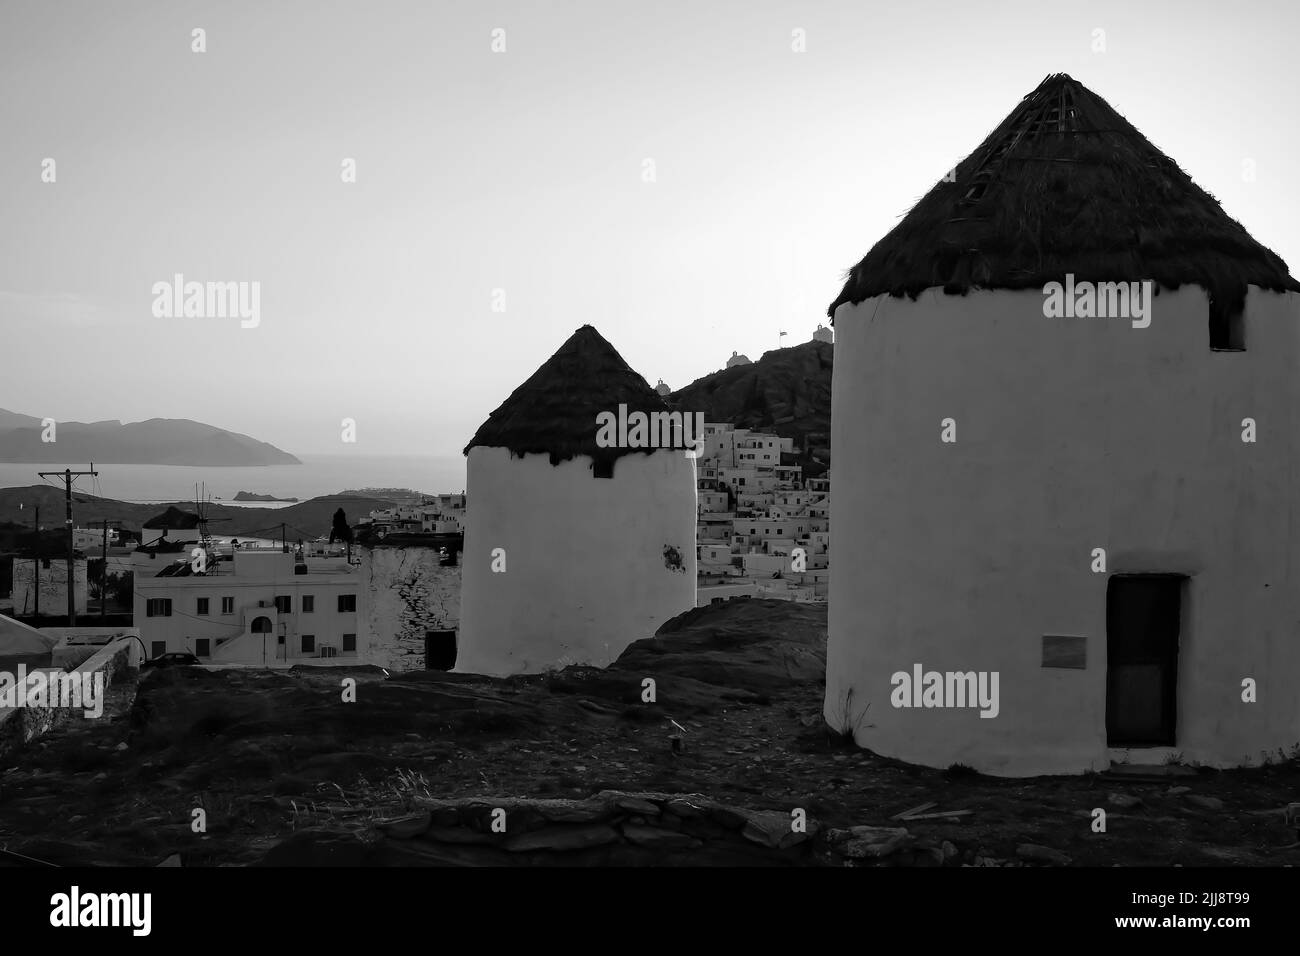 Vue sur un magnifique moulin à vent blanc illuminé, tandis que le soleil se couche de façon spectaculaire derrière le village d'iOS en Grèce, en noir et blanc Banque D'Images